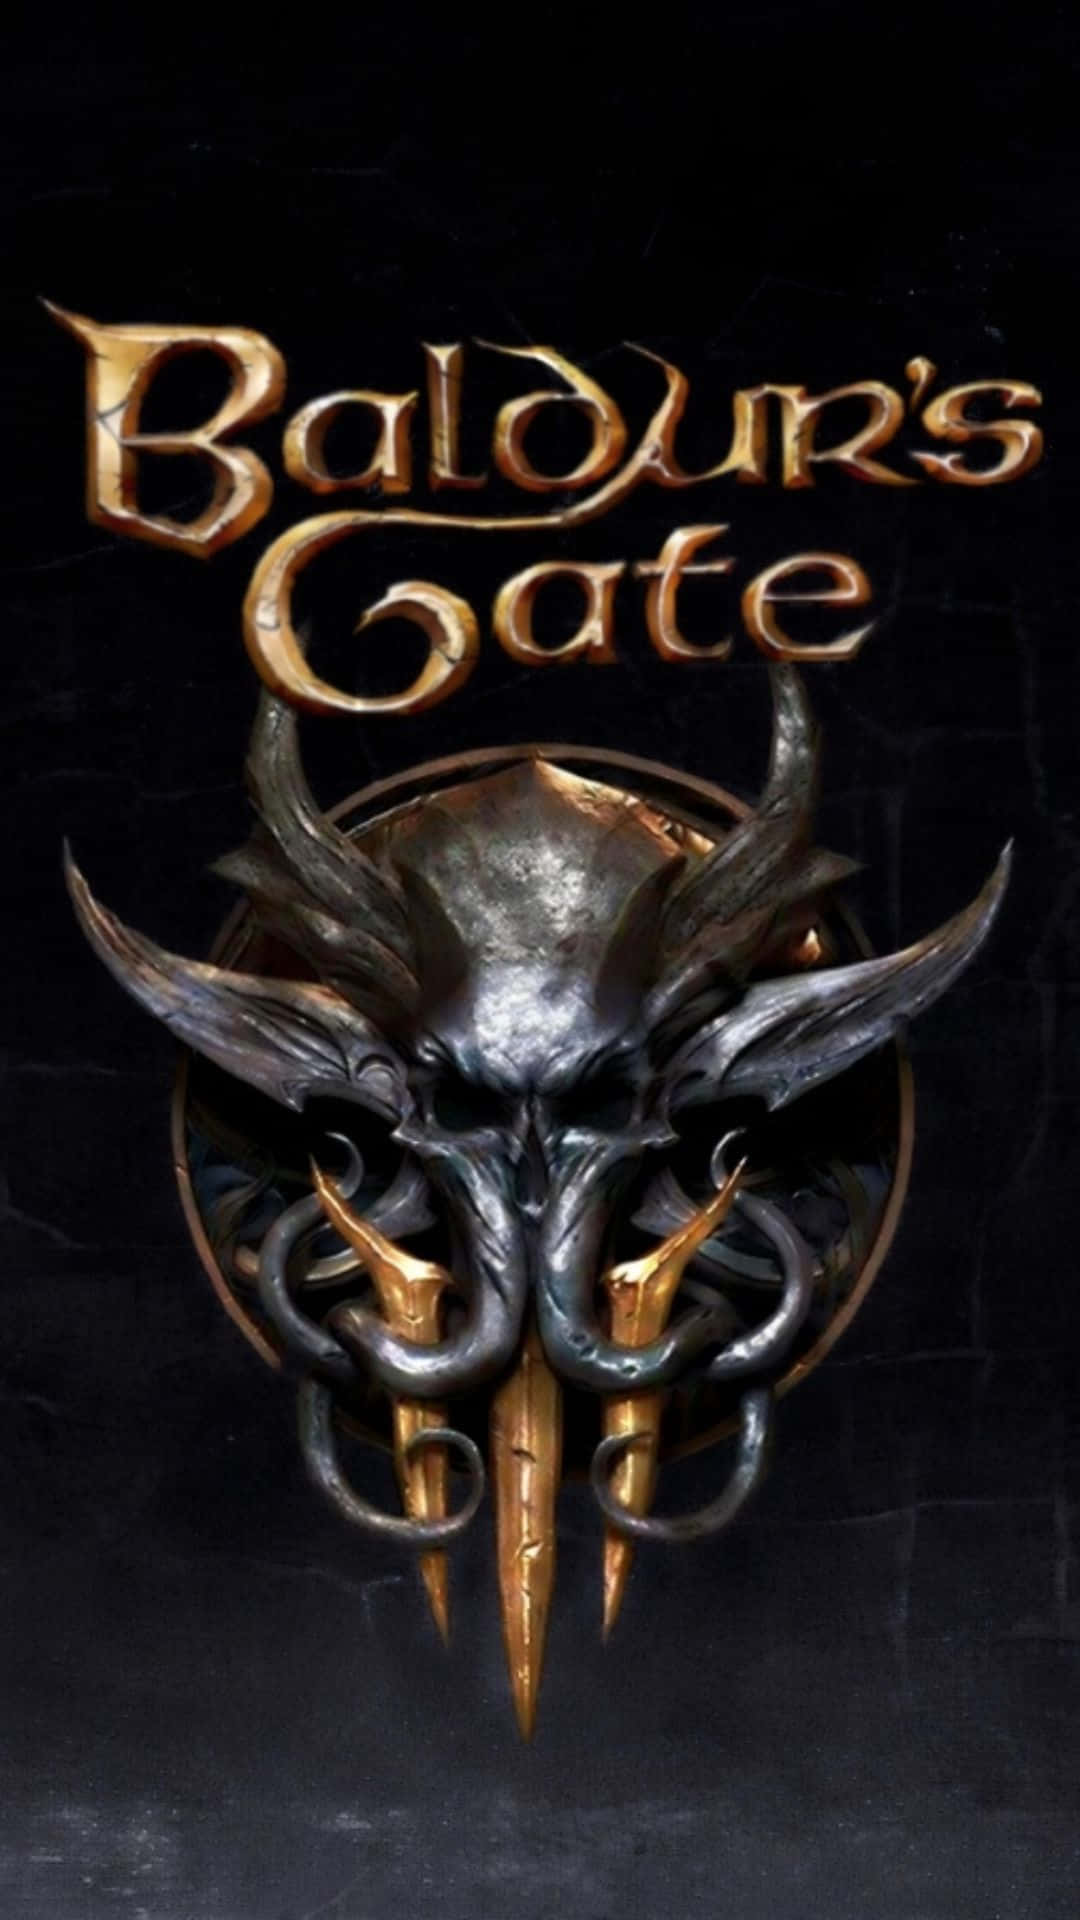 Baldurs Gate Logoand Mask Wallpaper